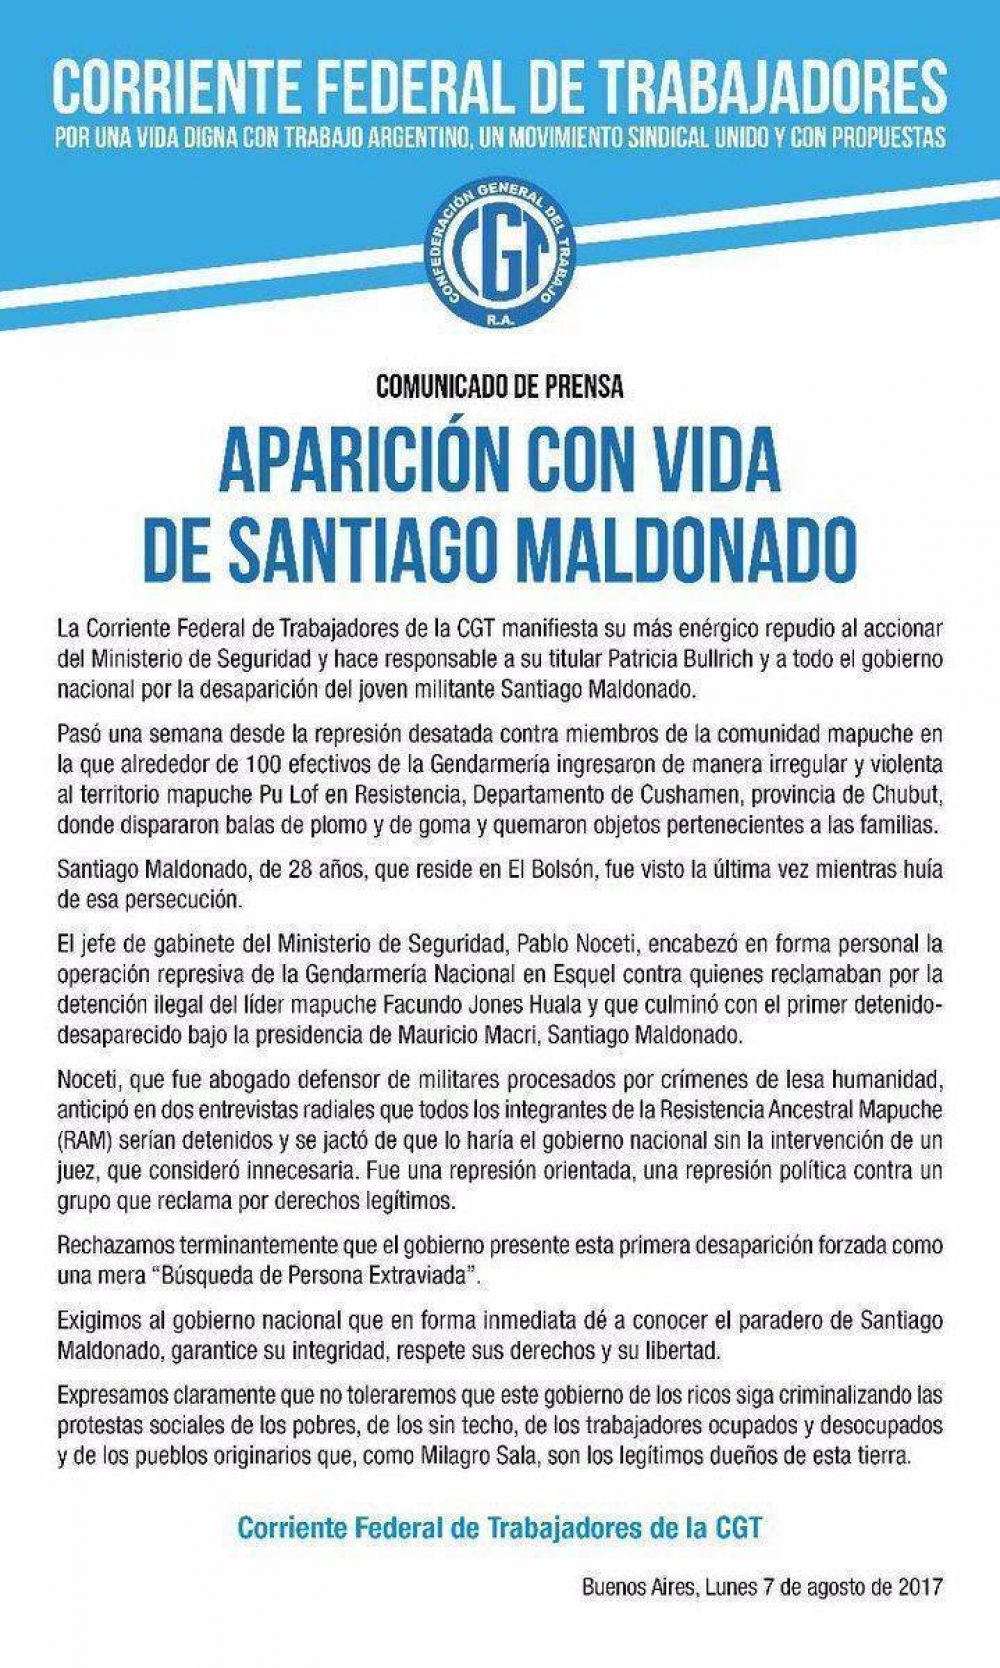 La Corriente responsabiliz a Bullrich por la desaparicin de Santiado Maldonado